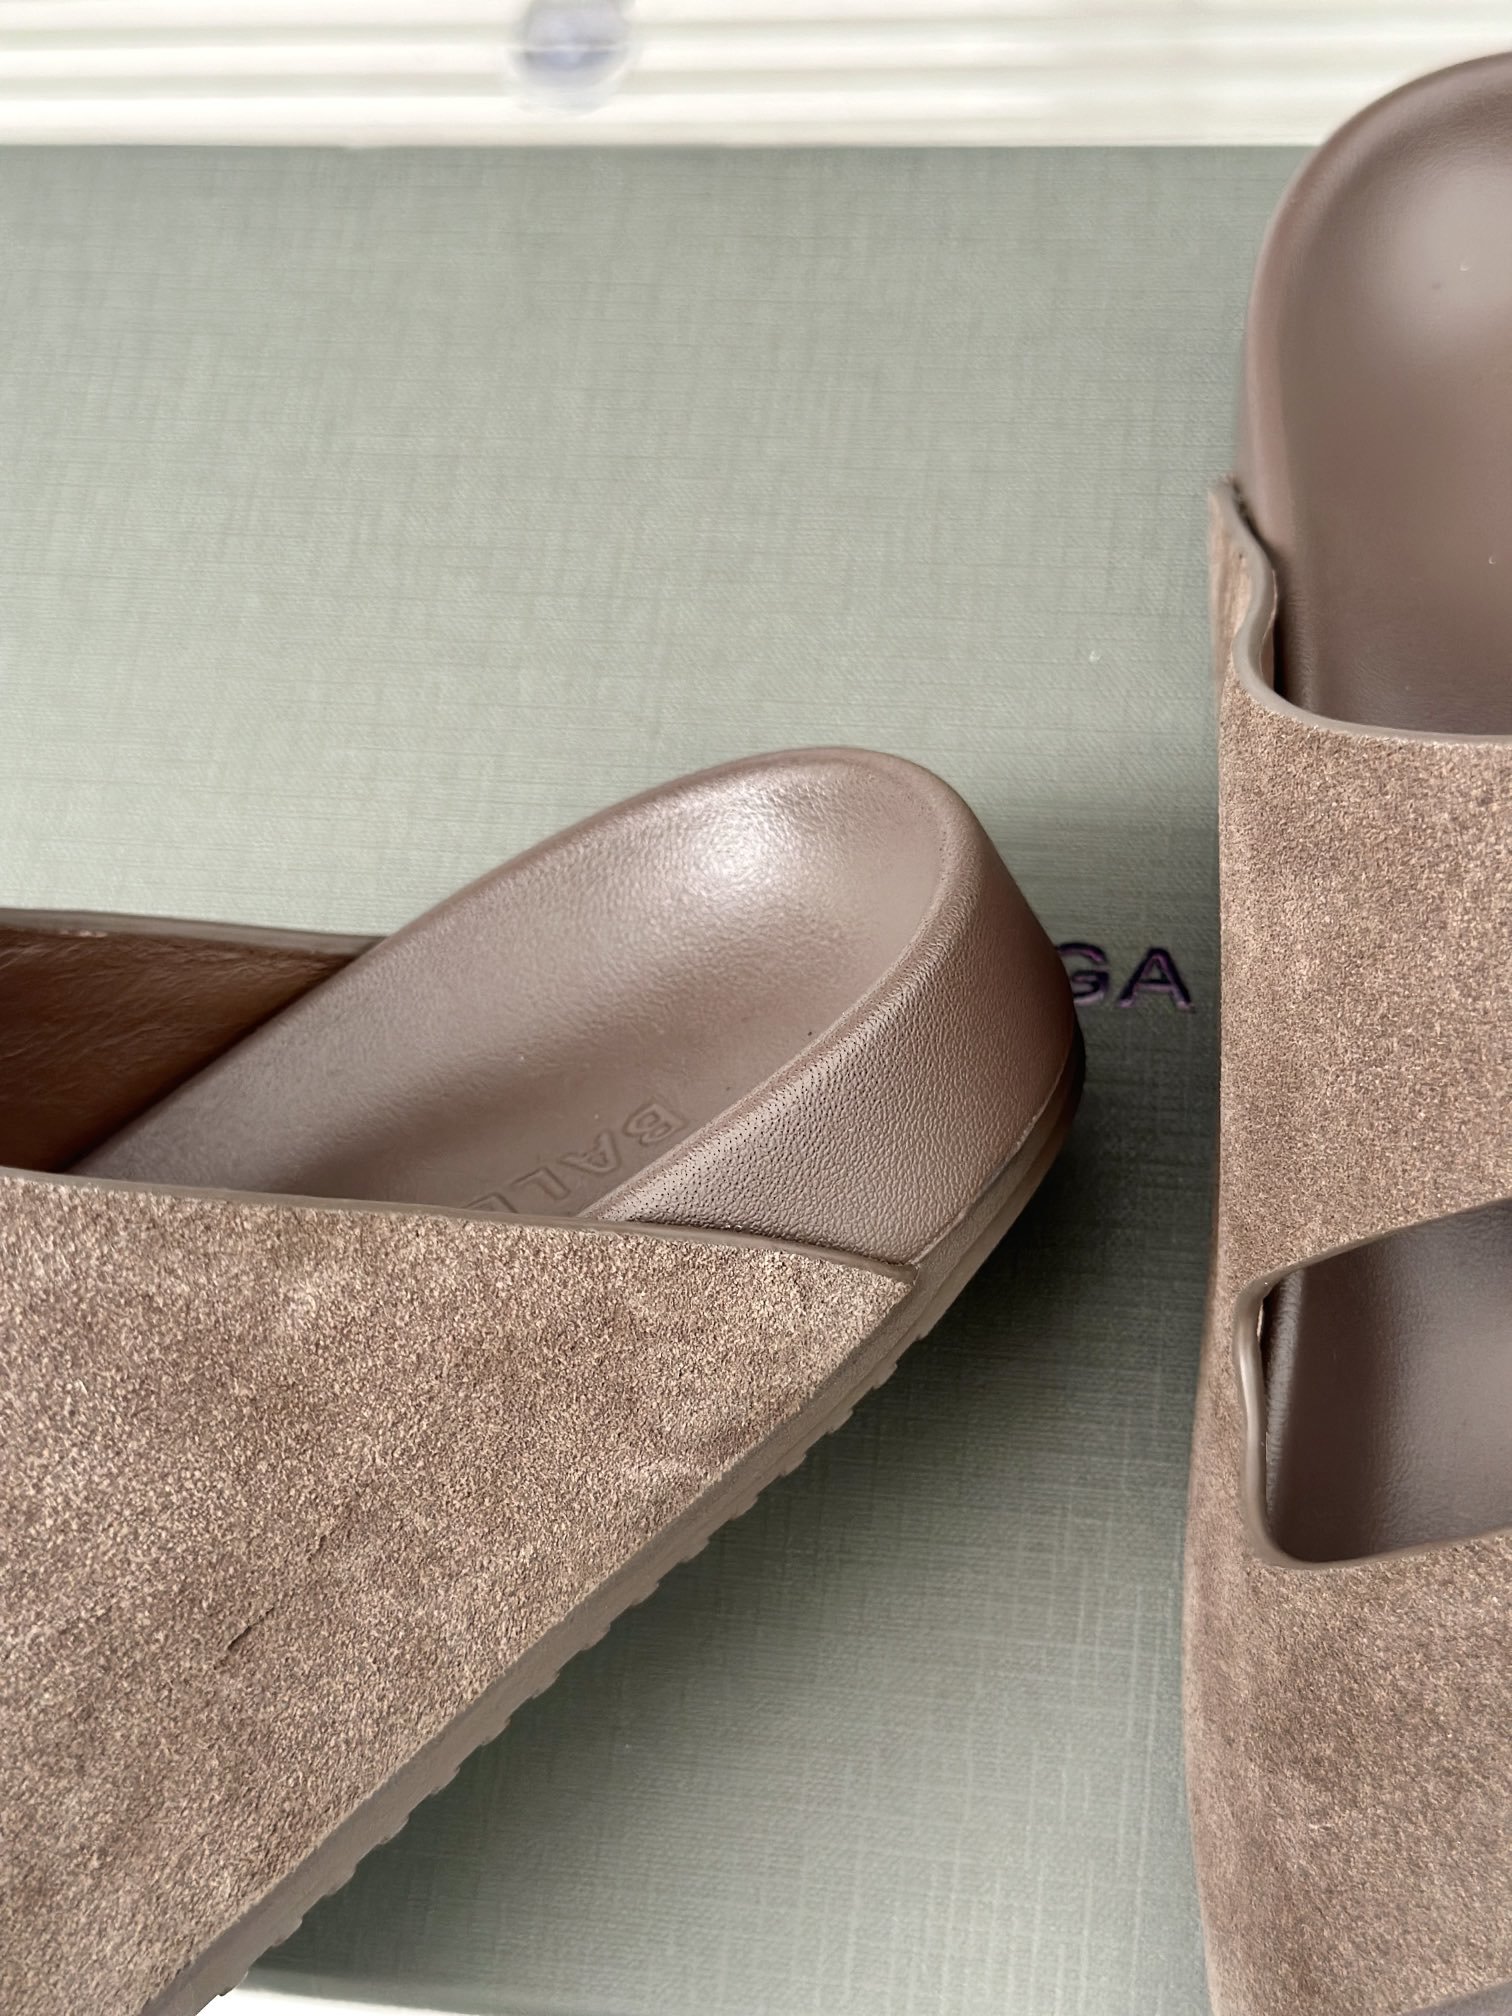 Balenciag*巴黎世家24s新品五趾造型两带拖鞋️将时髦发挥到极致巴黎的鞋子绝对开了挂因为真的每一